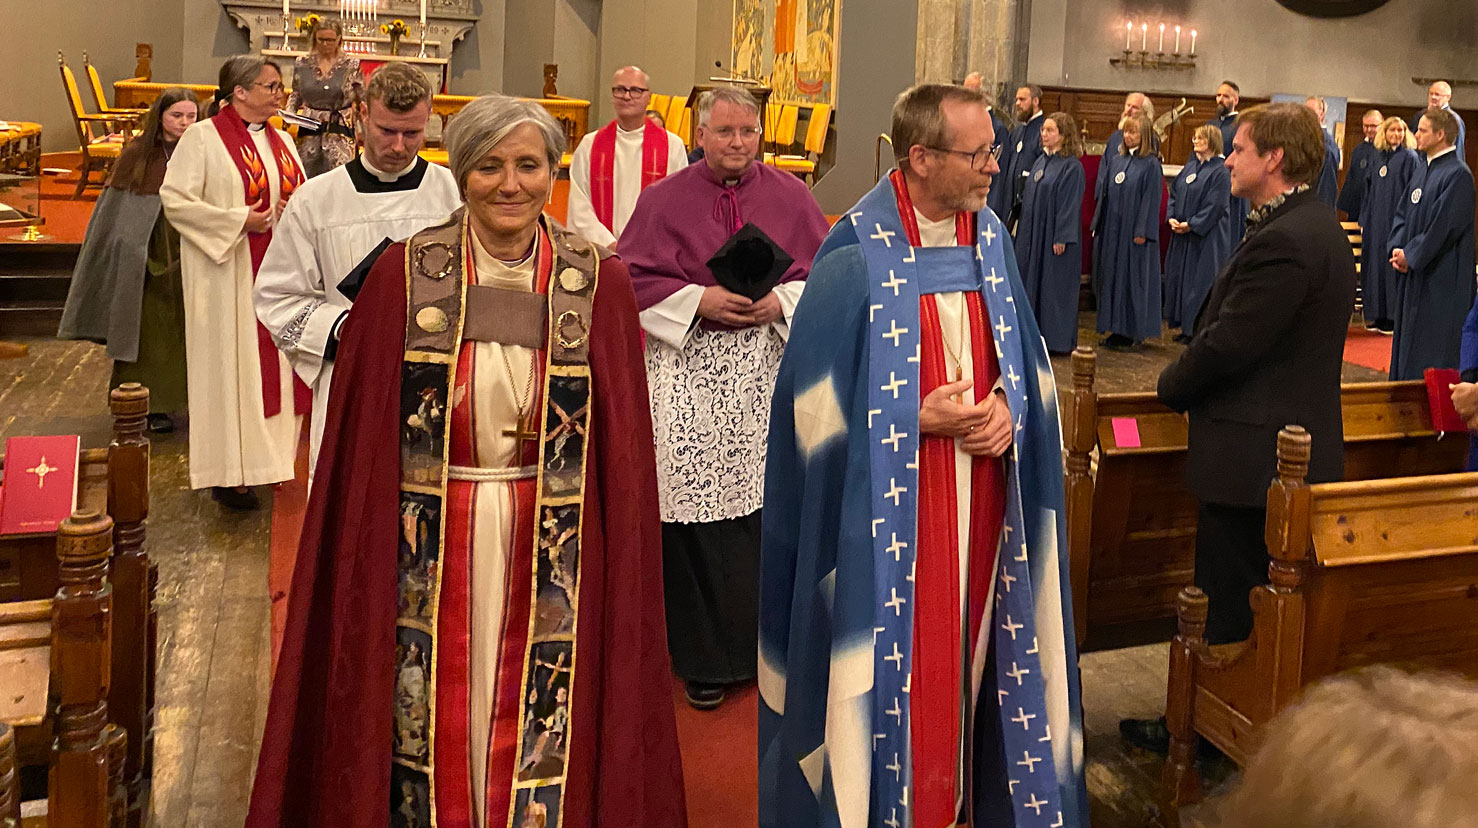 Biskopene Halvor Nordhaug og Herborg Finnset deltok på festgudstjenesten i Bergen domkirke. Preseter fra St. Paul katolske menighet i Bergen var også til stede. Foto: Ragna Sofie Grung Moe.